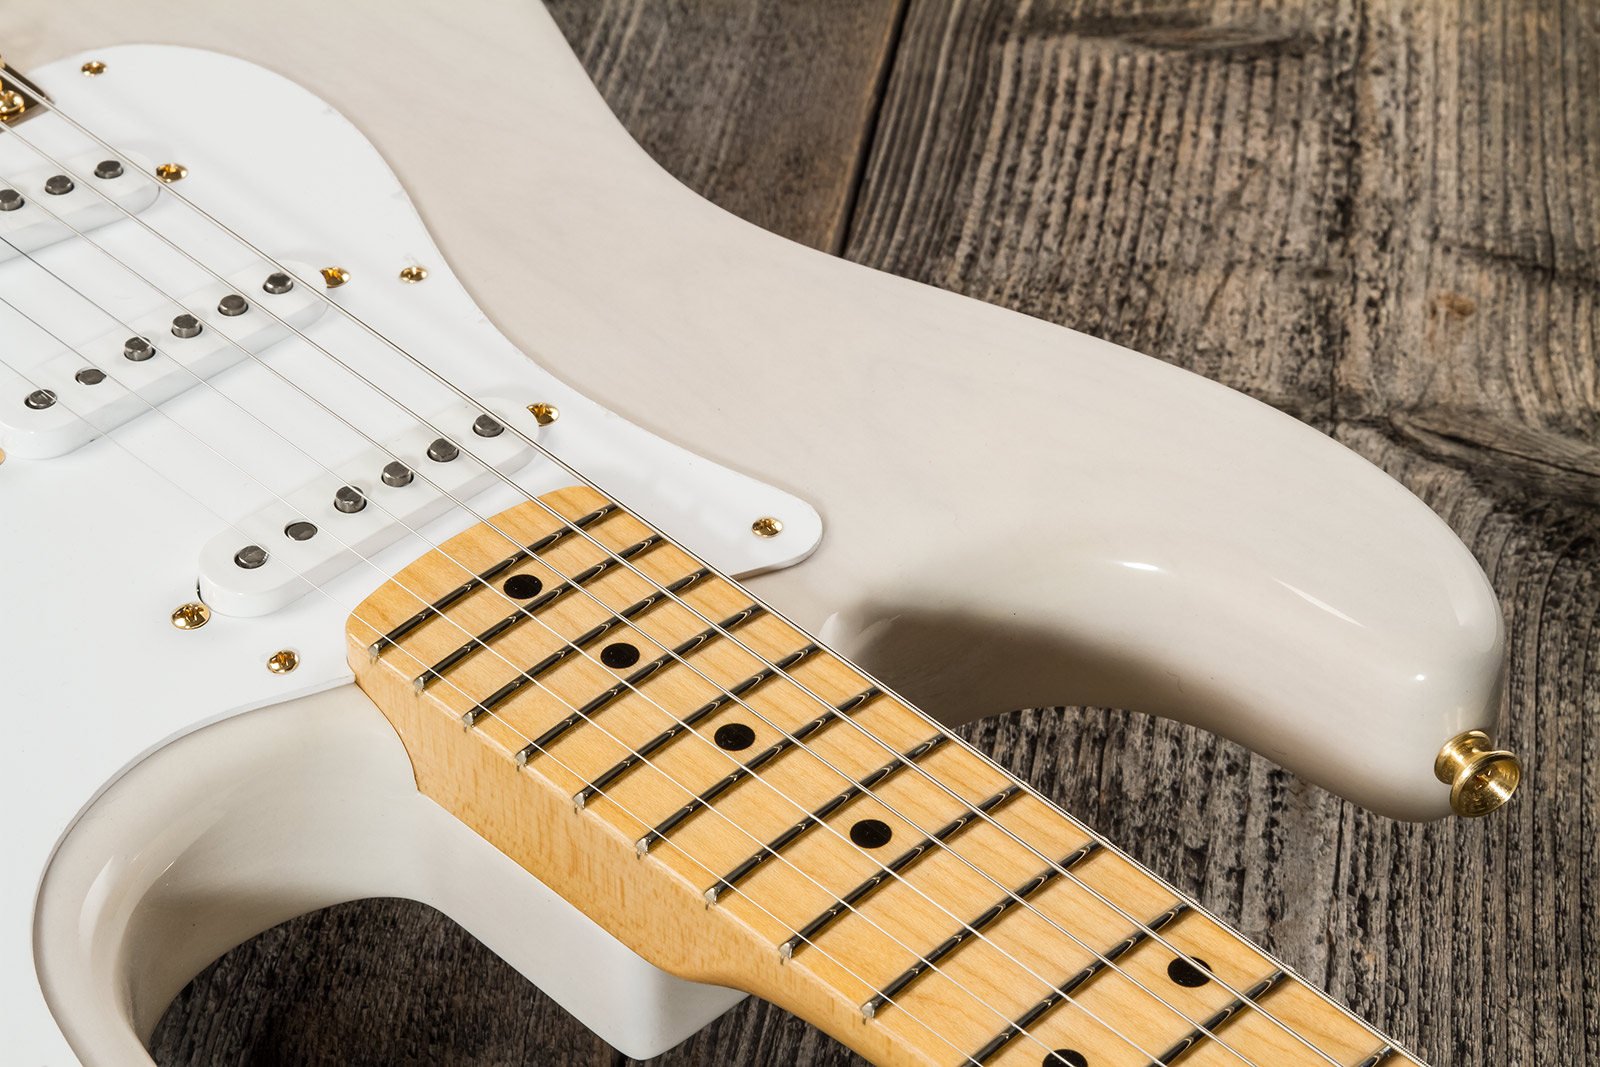 Fender Custom Shop Strat 1957 3s Trem Mn #r125475 - Nos White Blonde - Str shape electric guitar - Variation 4